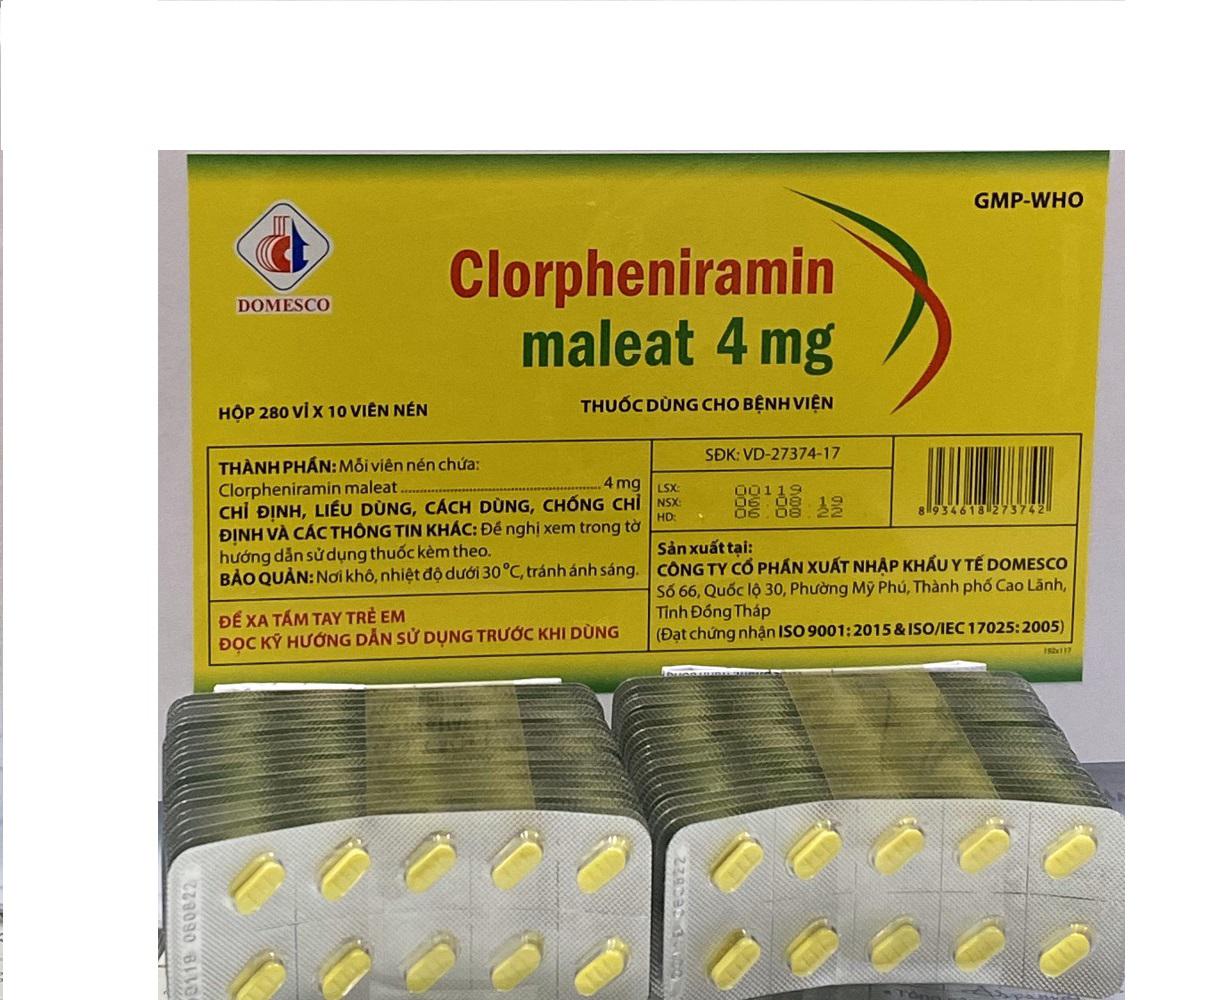 Clorpheniramin Maleat 4mg Domesco (H/2800v)